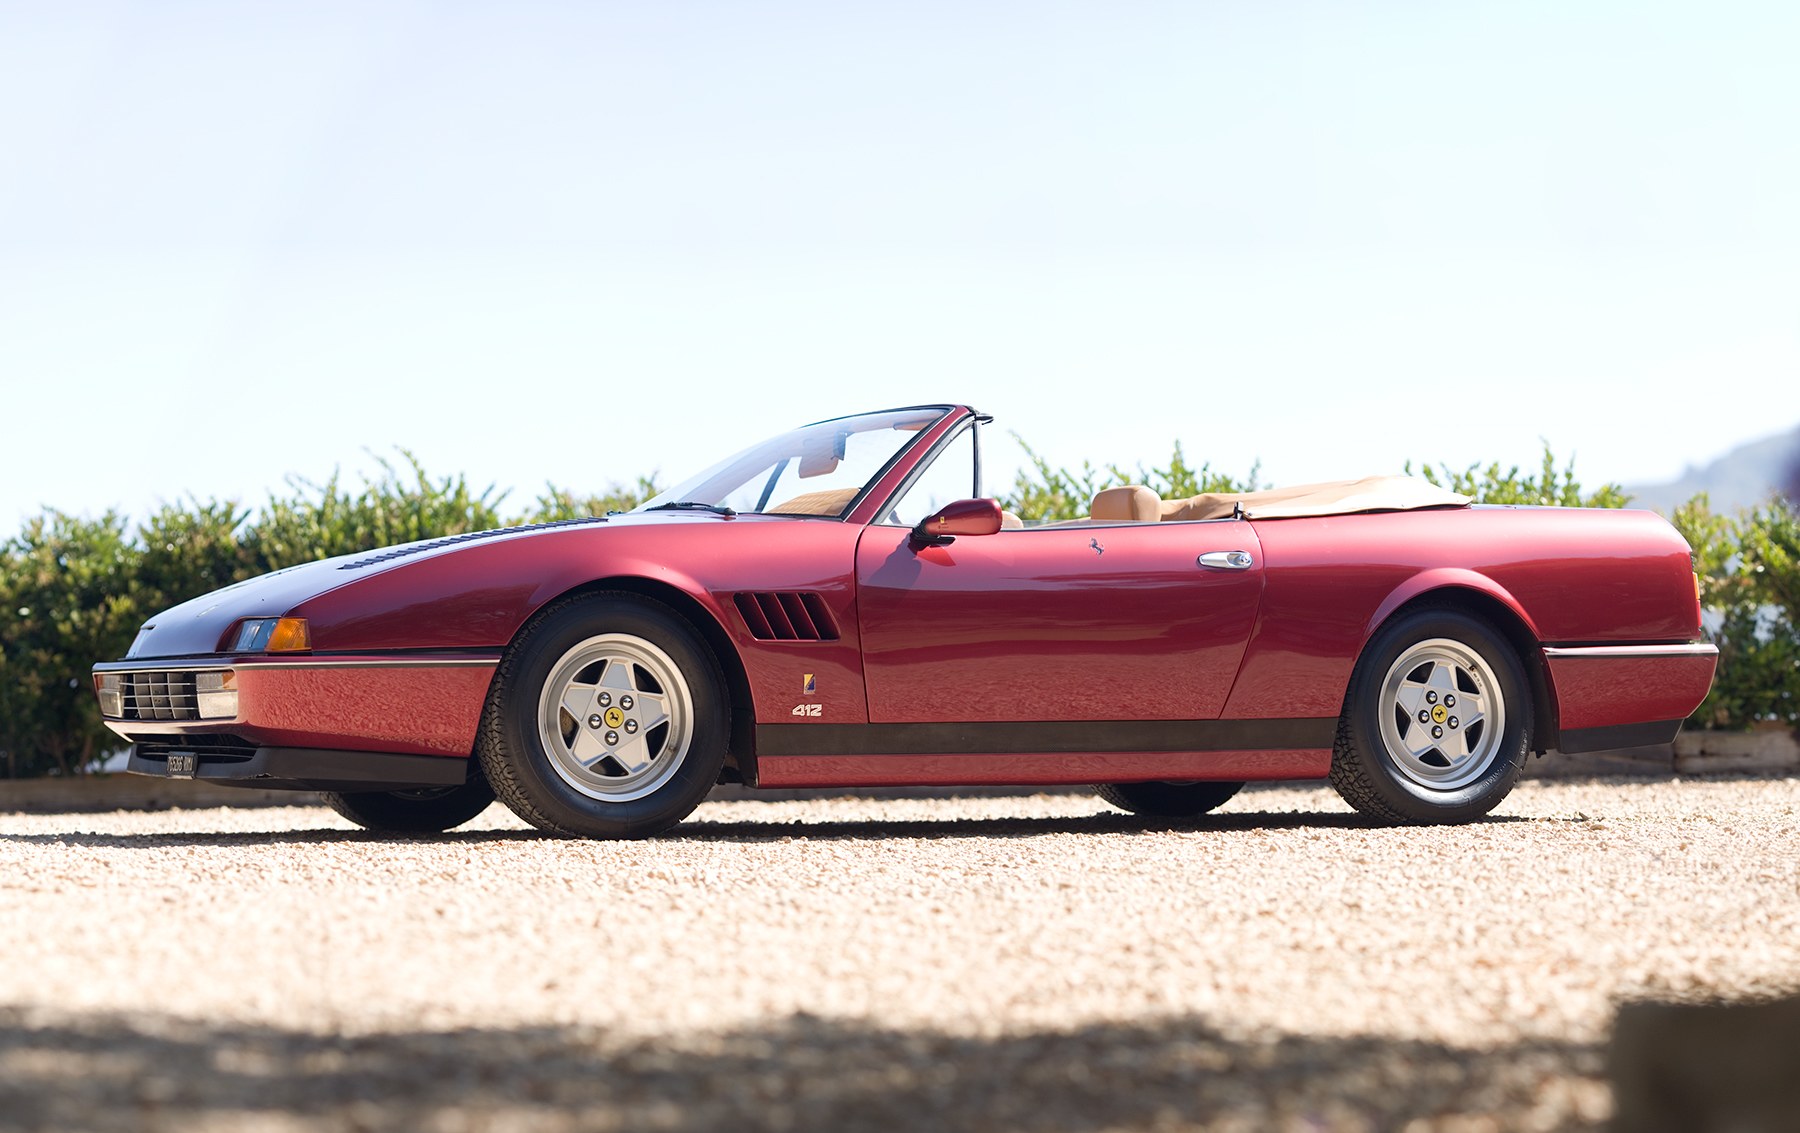  1984 Ferrari 412 